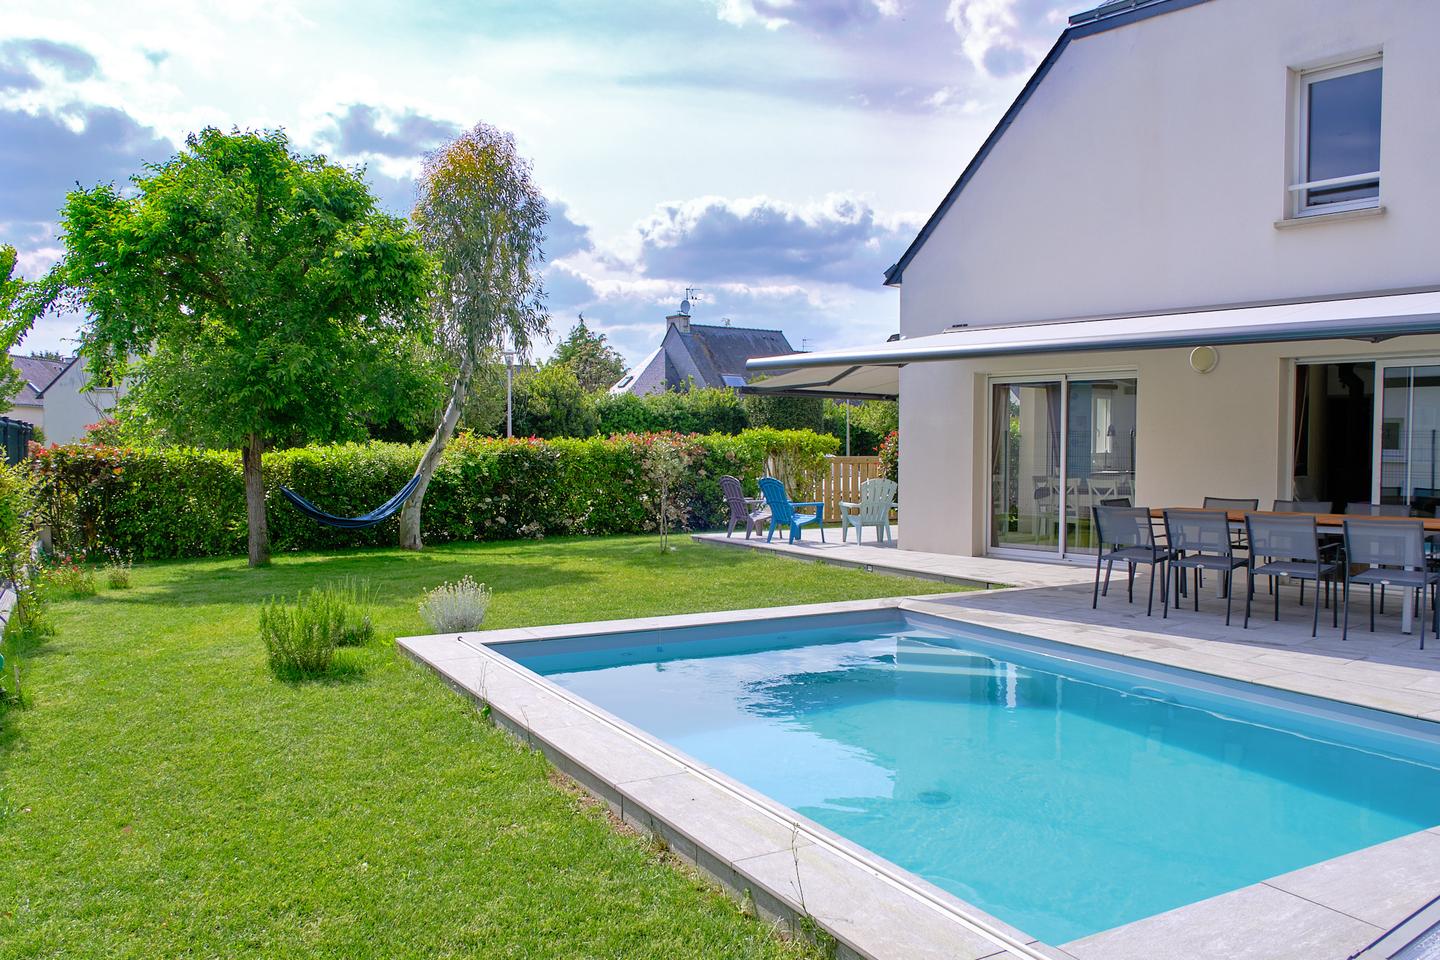 Hôte GreenGo: Grande maison familiale avec piscine pour 10 personnes, 12 max. Note de 4.9 sur une autre plateforme - Image 23